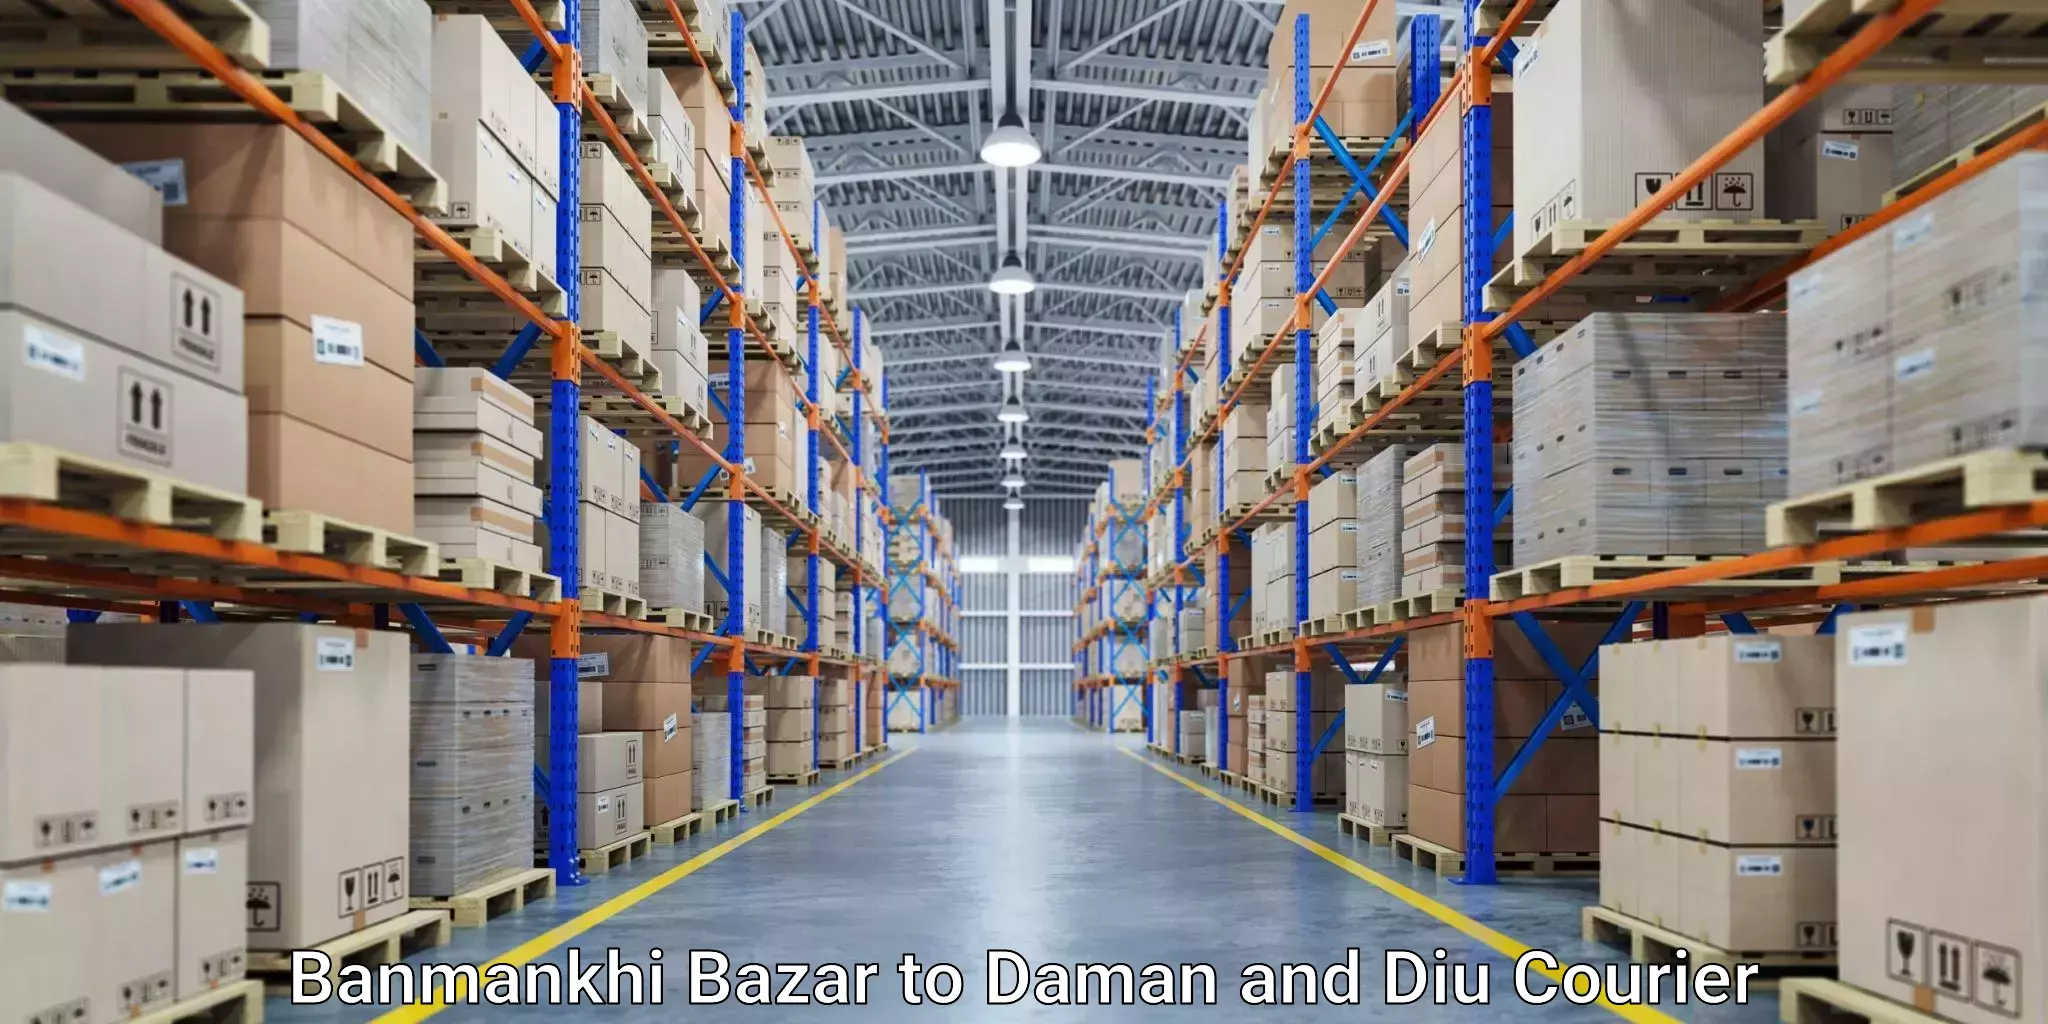 Flexible parcel services Banmankhi Bazar to Diu